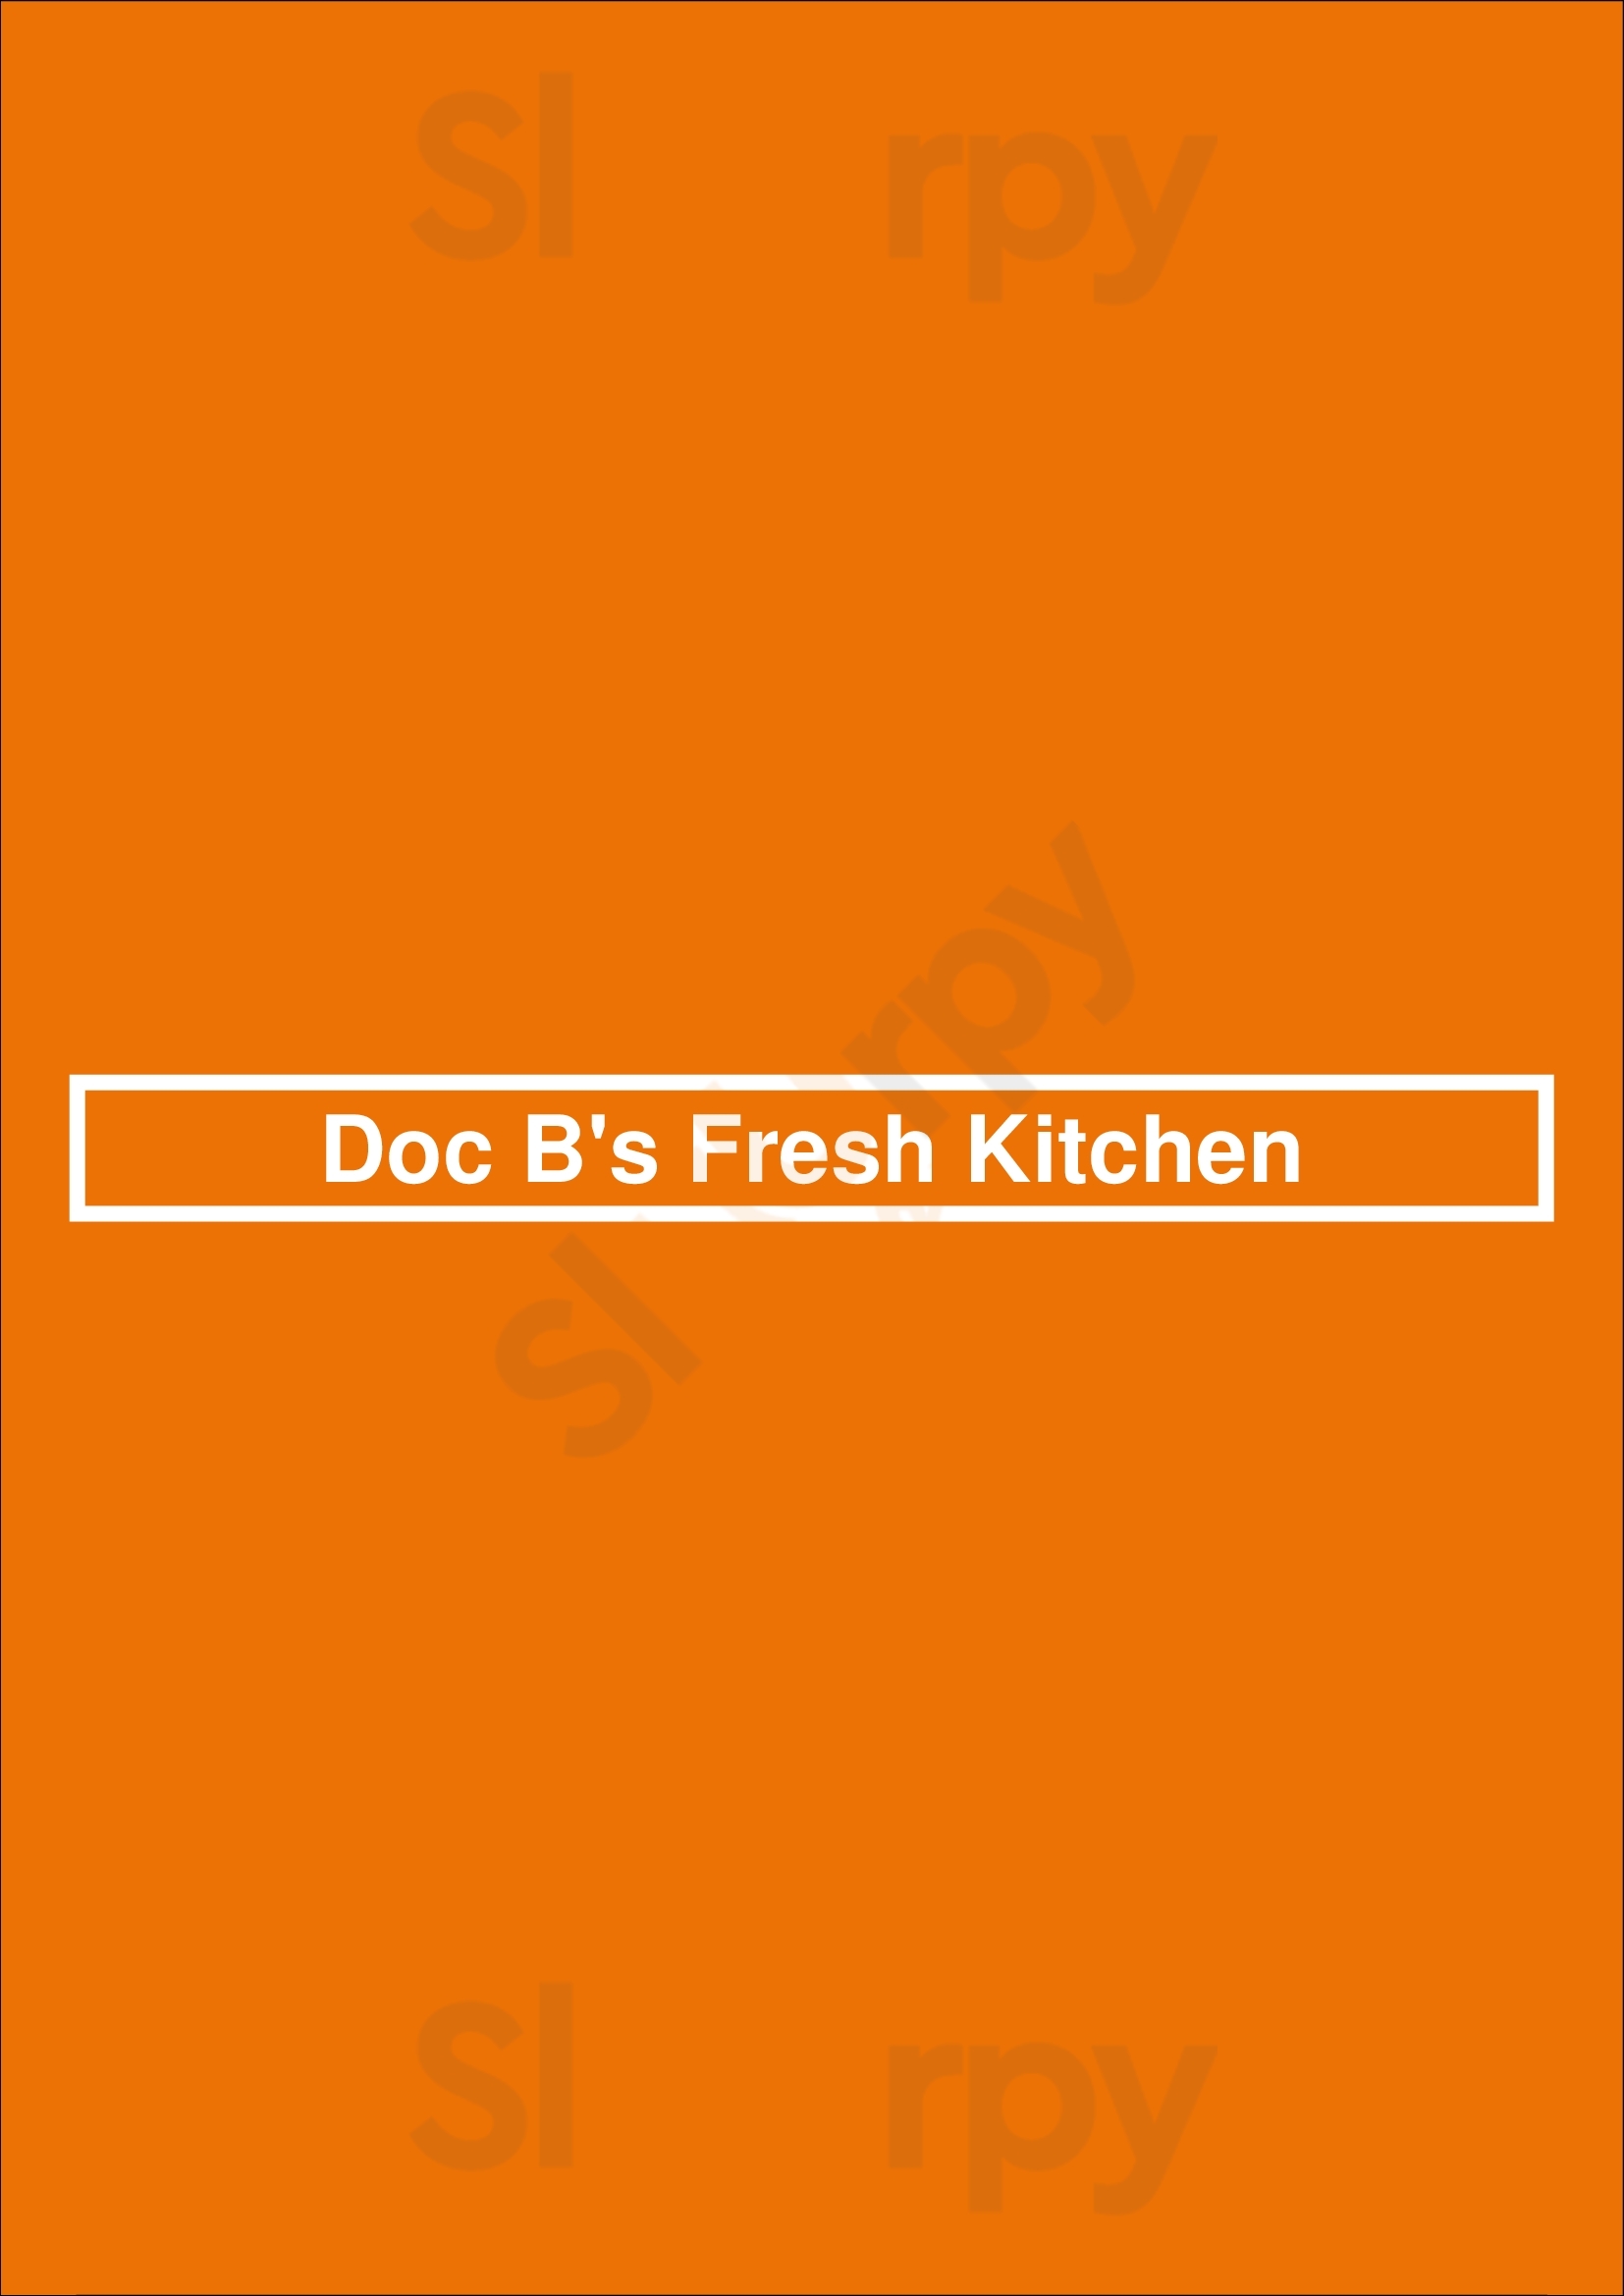 Doc B's Fresh Kitchen Austin Menu - 1